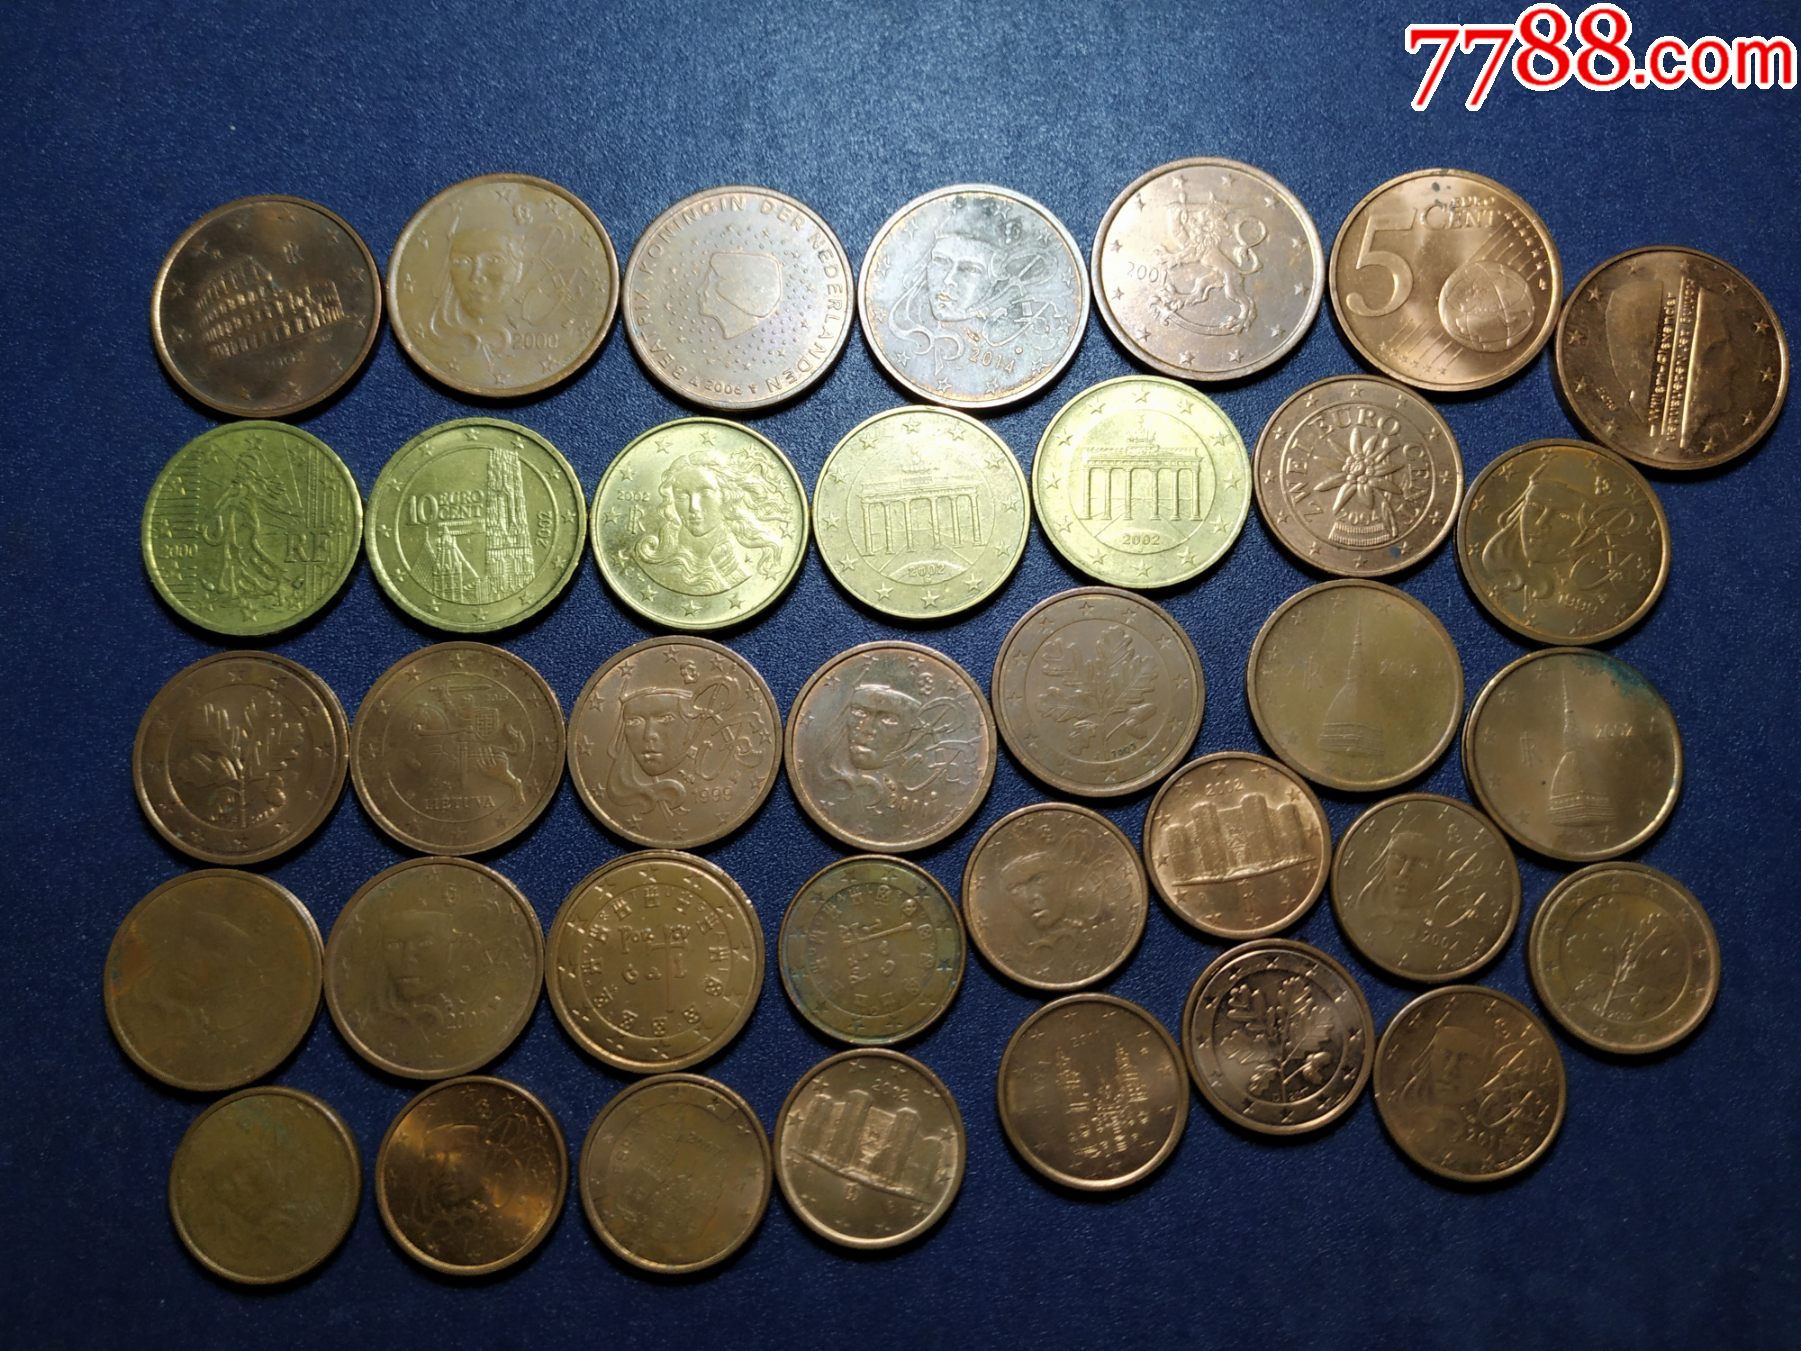 巴西老版硬币一组￥2010品99好品墨西哥老版硬币一组￥10010品99